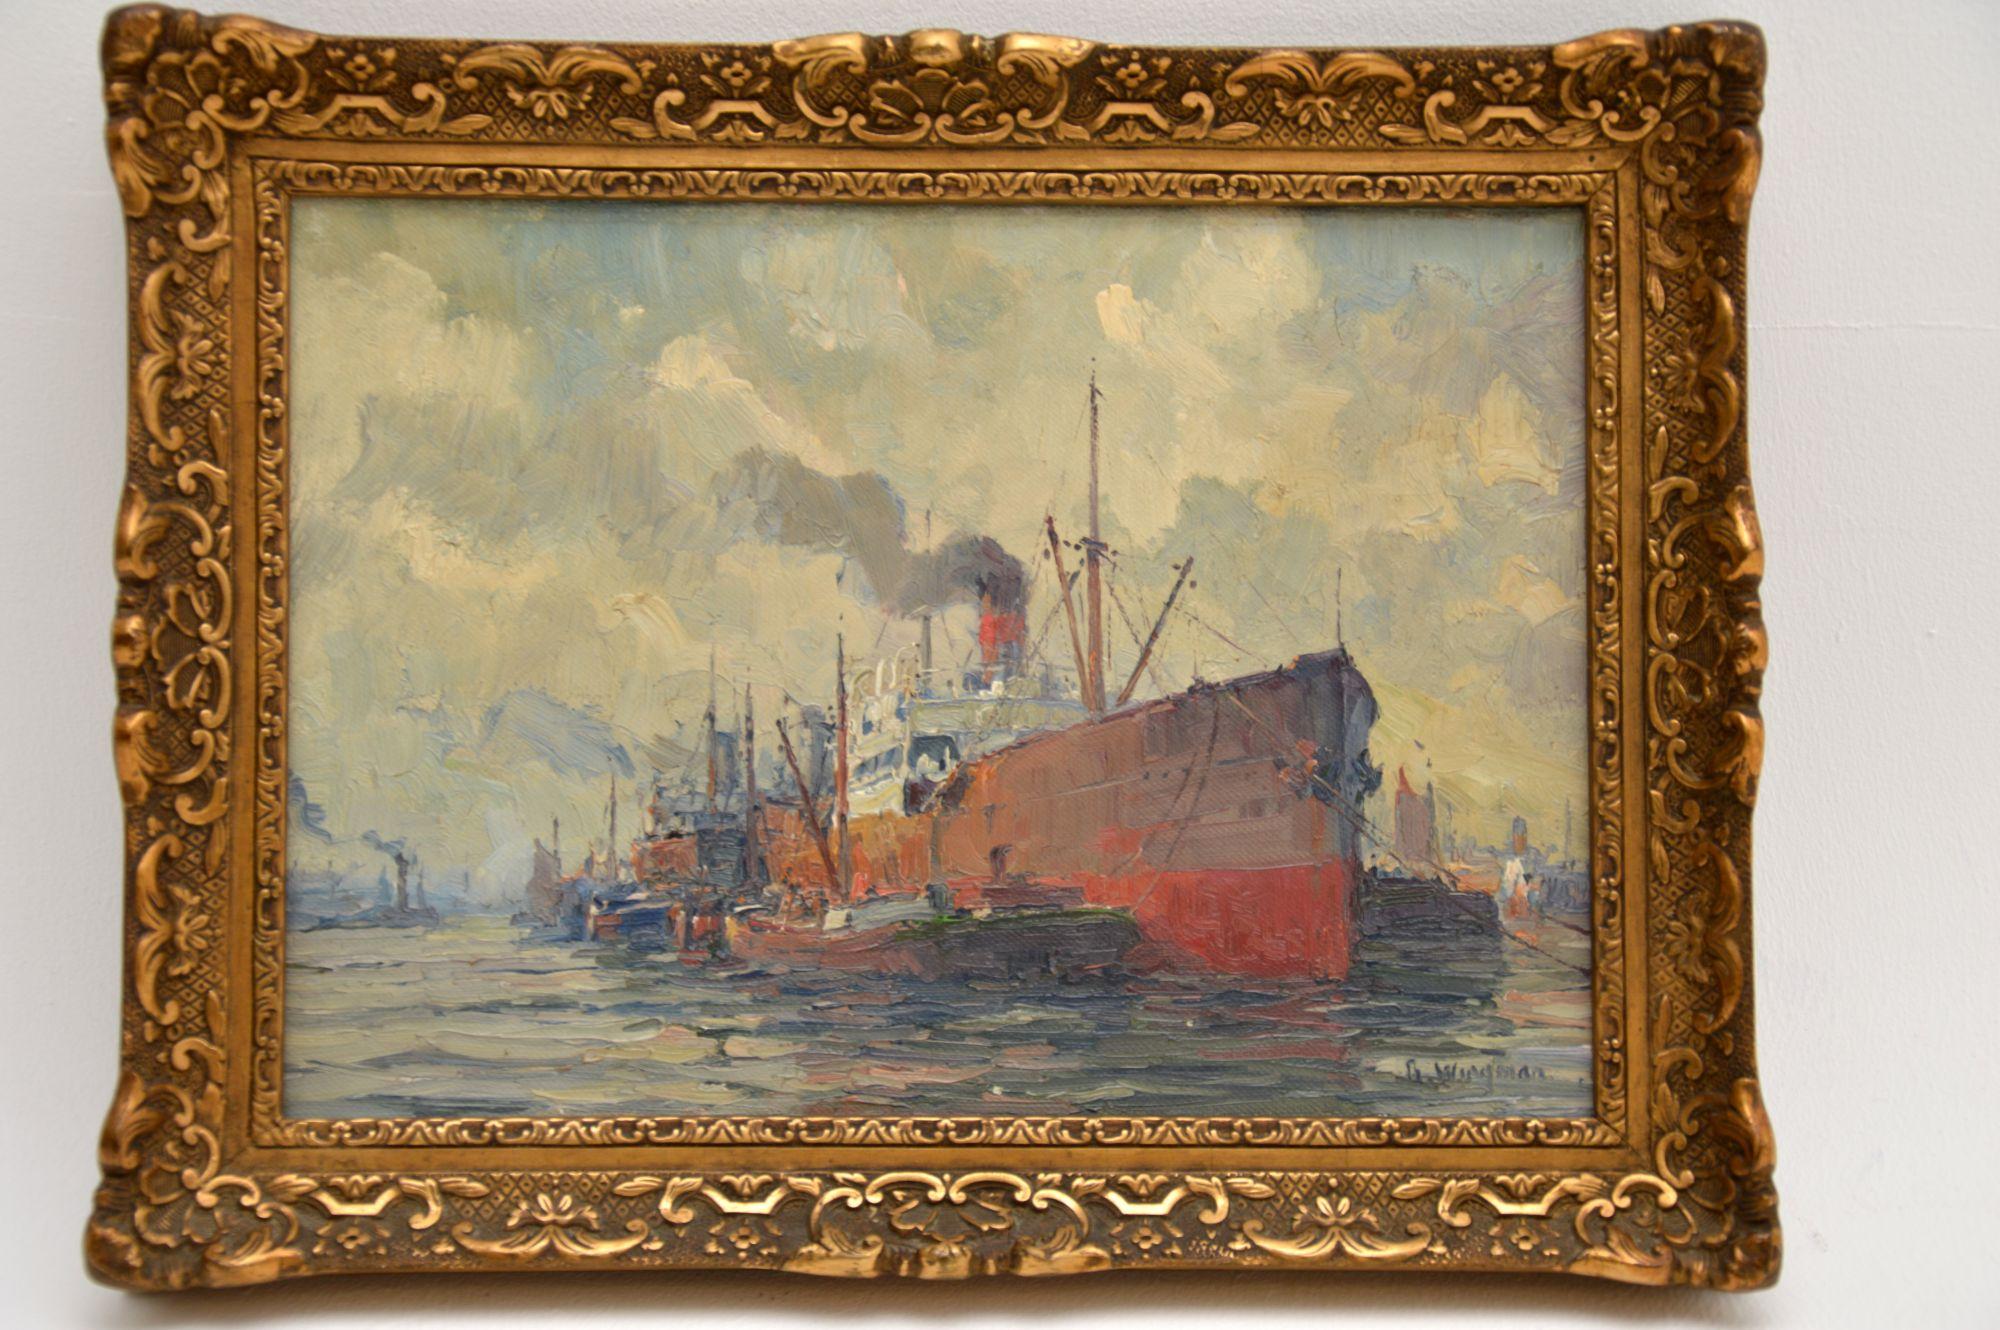 Une belle peinture à l'huile ancienne sur toile de Gerard Wiegman (1875-1964). D'origine hollandaise, elle a été peinte au début du XXe siècle, vers les années 1920-30.

Elle représente un pétrolier dans un port, flanqué de bateaux plus petits. Elle